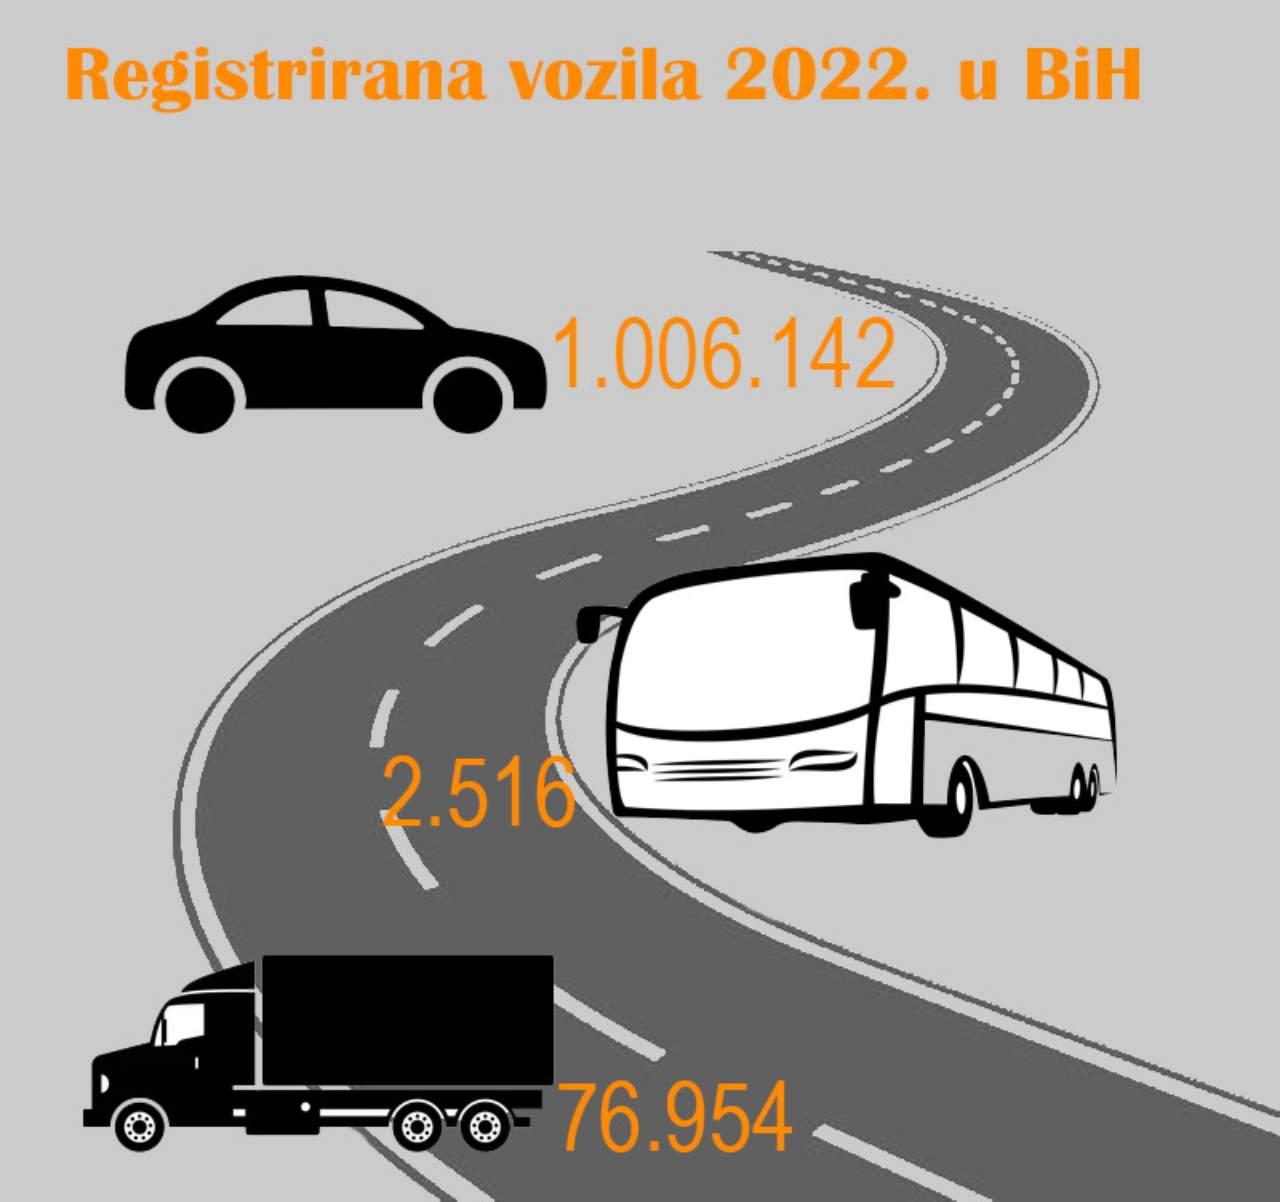 Registrirana vozila u 2022. godini - Imamo 1,1 milijun vozila: Polovica starija od 10 godina 